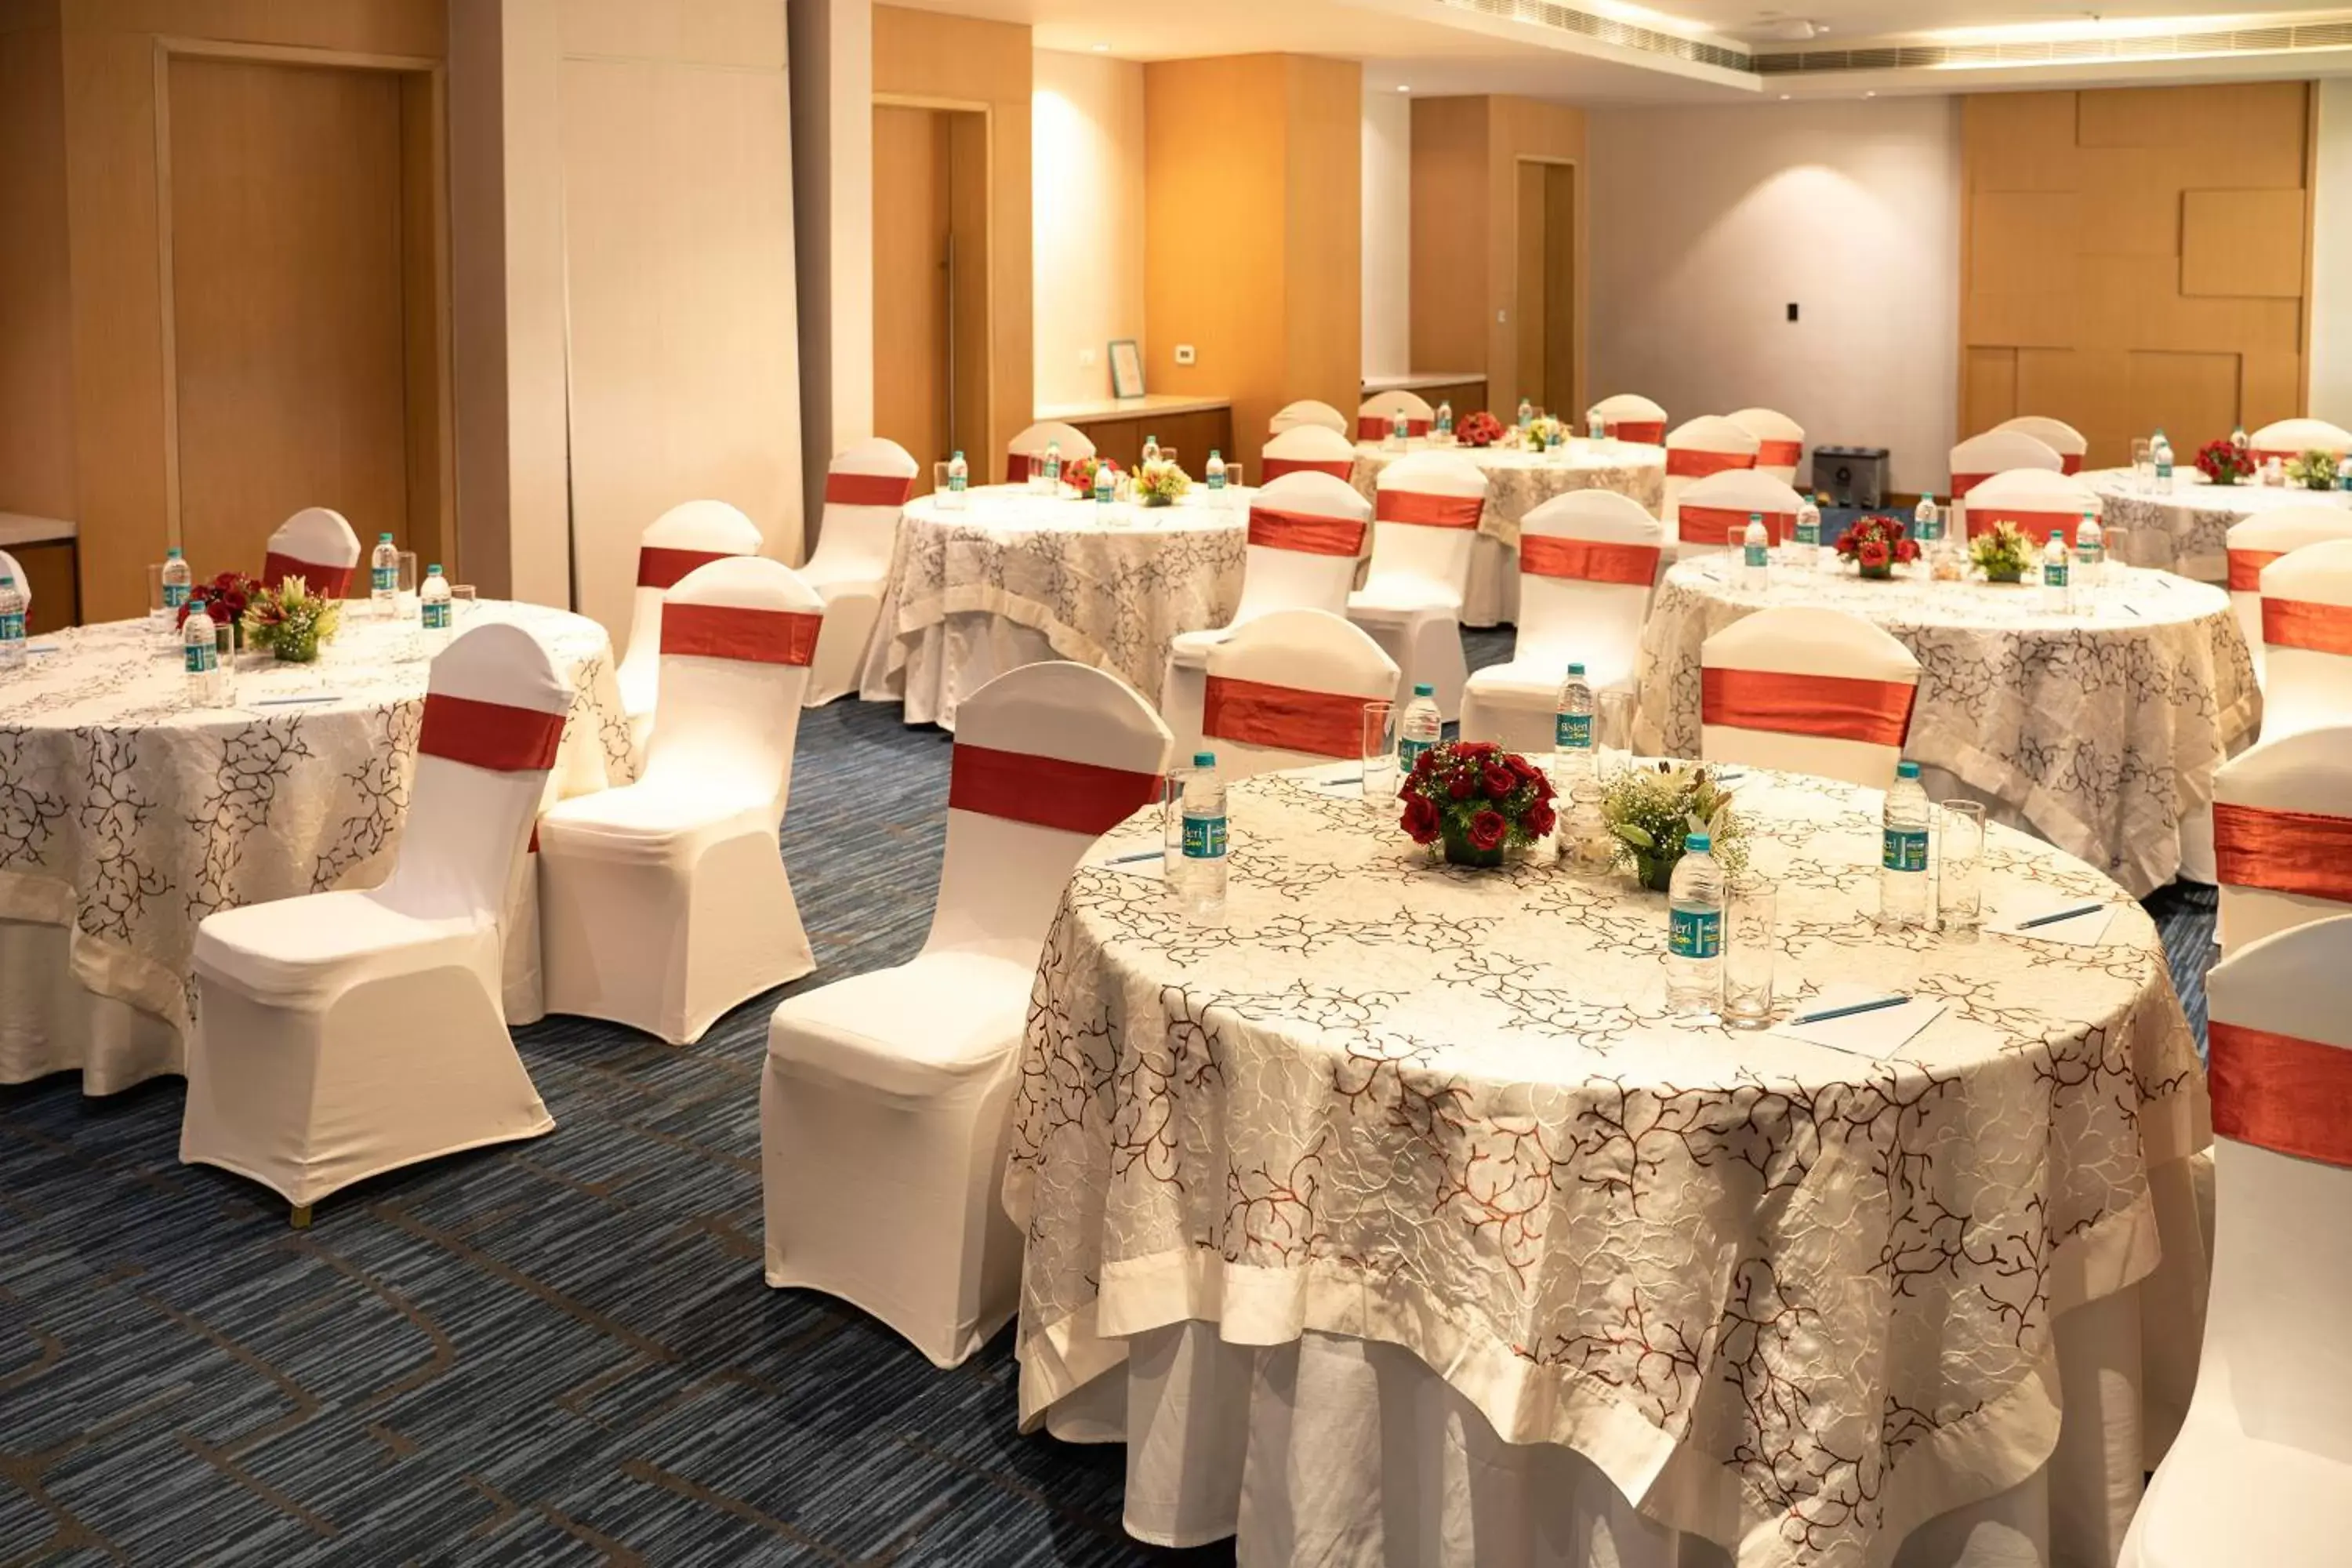 Banquet/Function facilities, Banquet Facilities in Sheraton Hyderabad Hotel